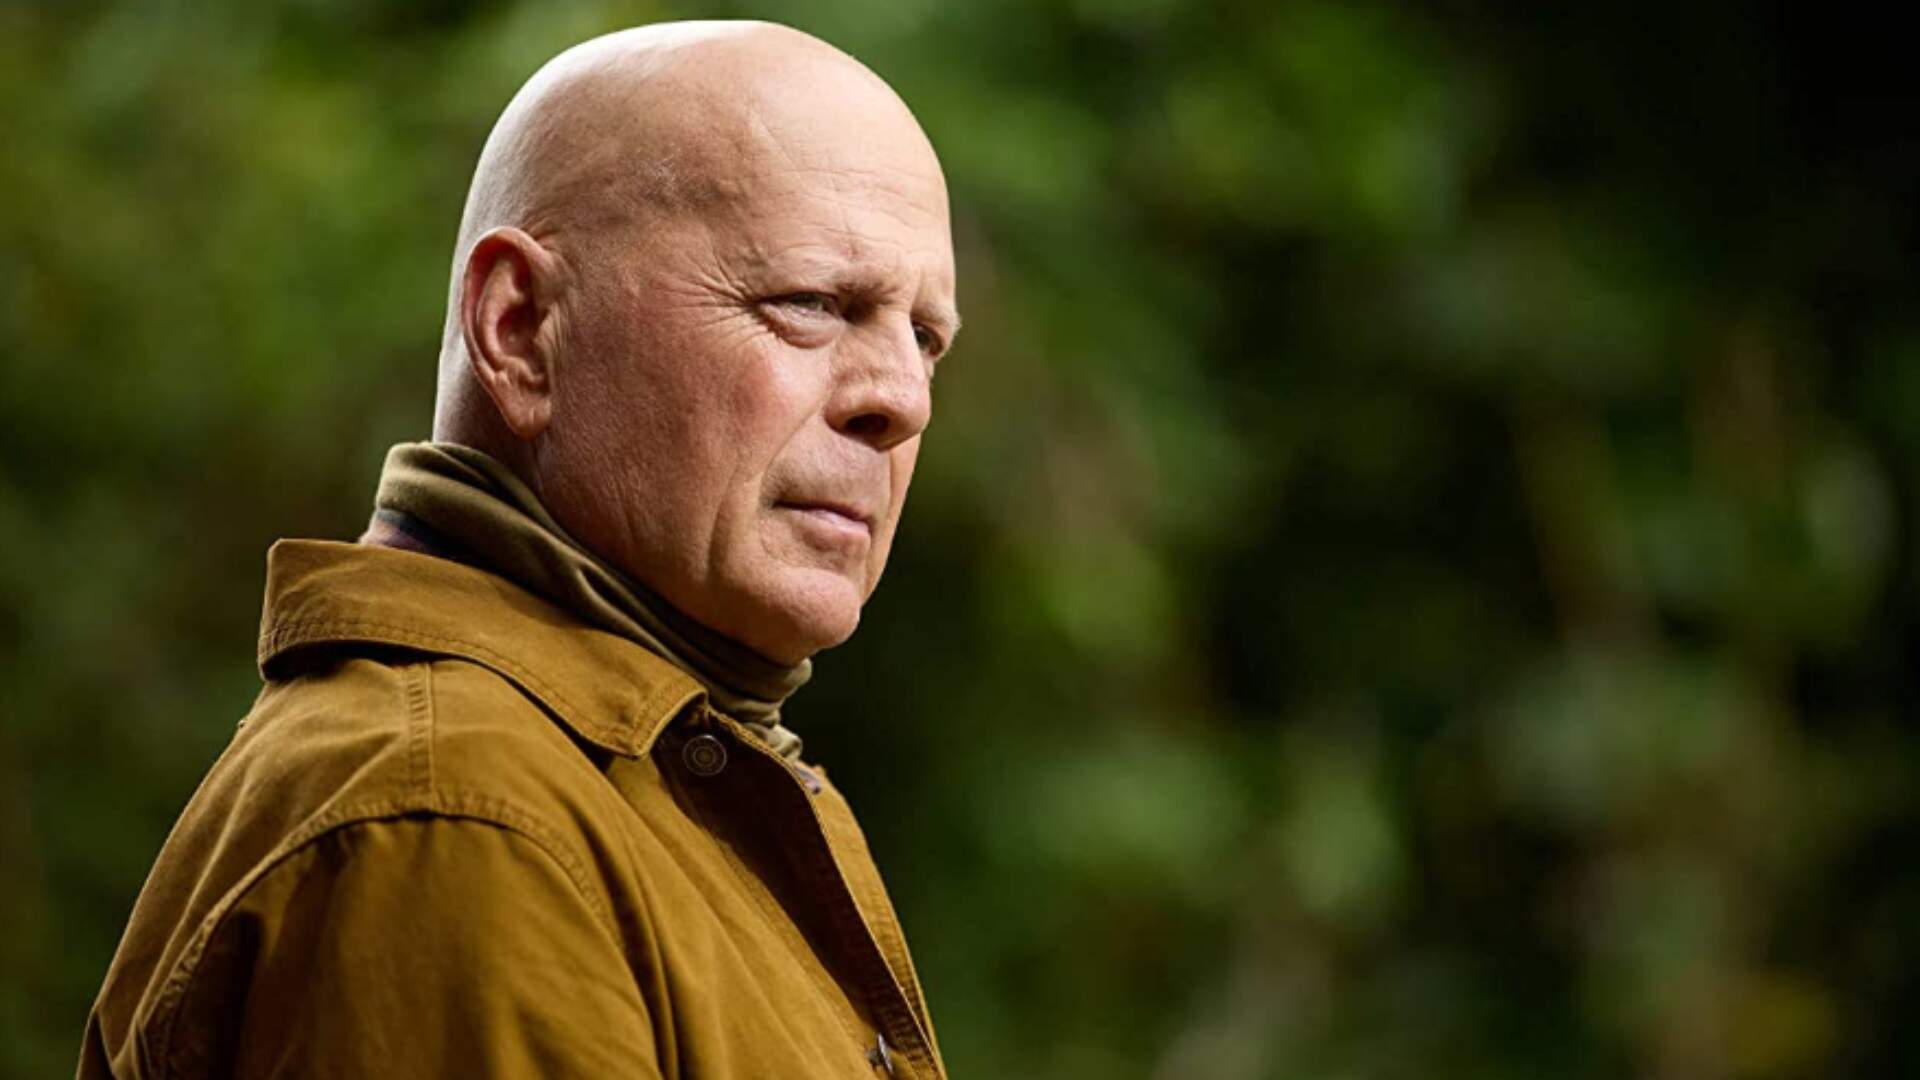 Protagonista de “Duro de Matar”, Bruce Willis, é diagnosticado com demência - Metropolitana FM